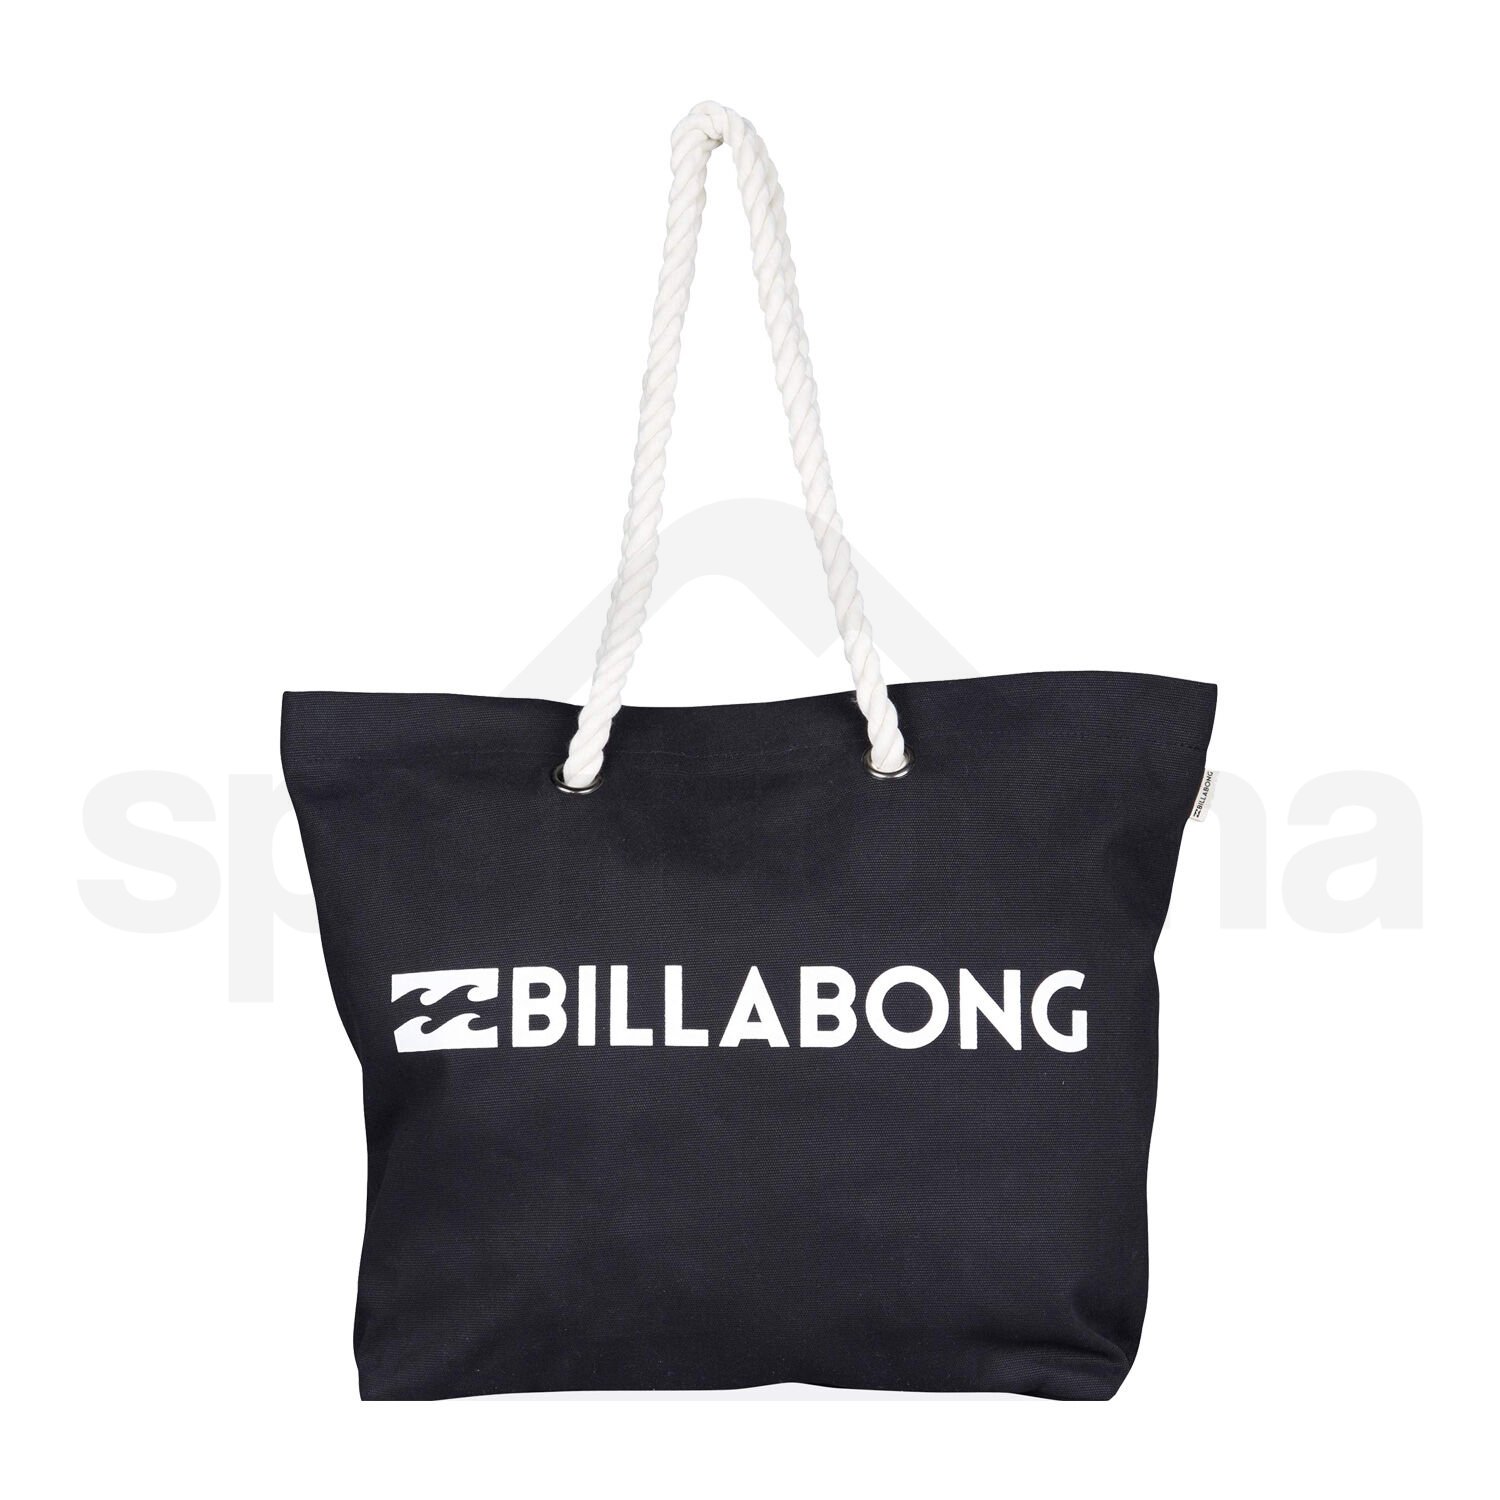 Taška Billabong Essential Bag - černá